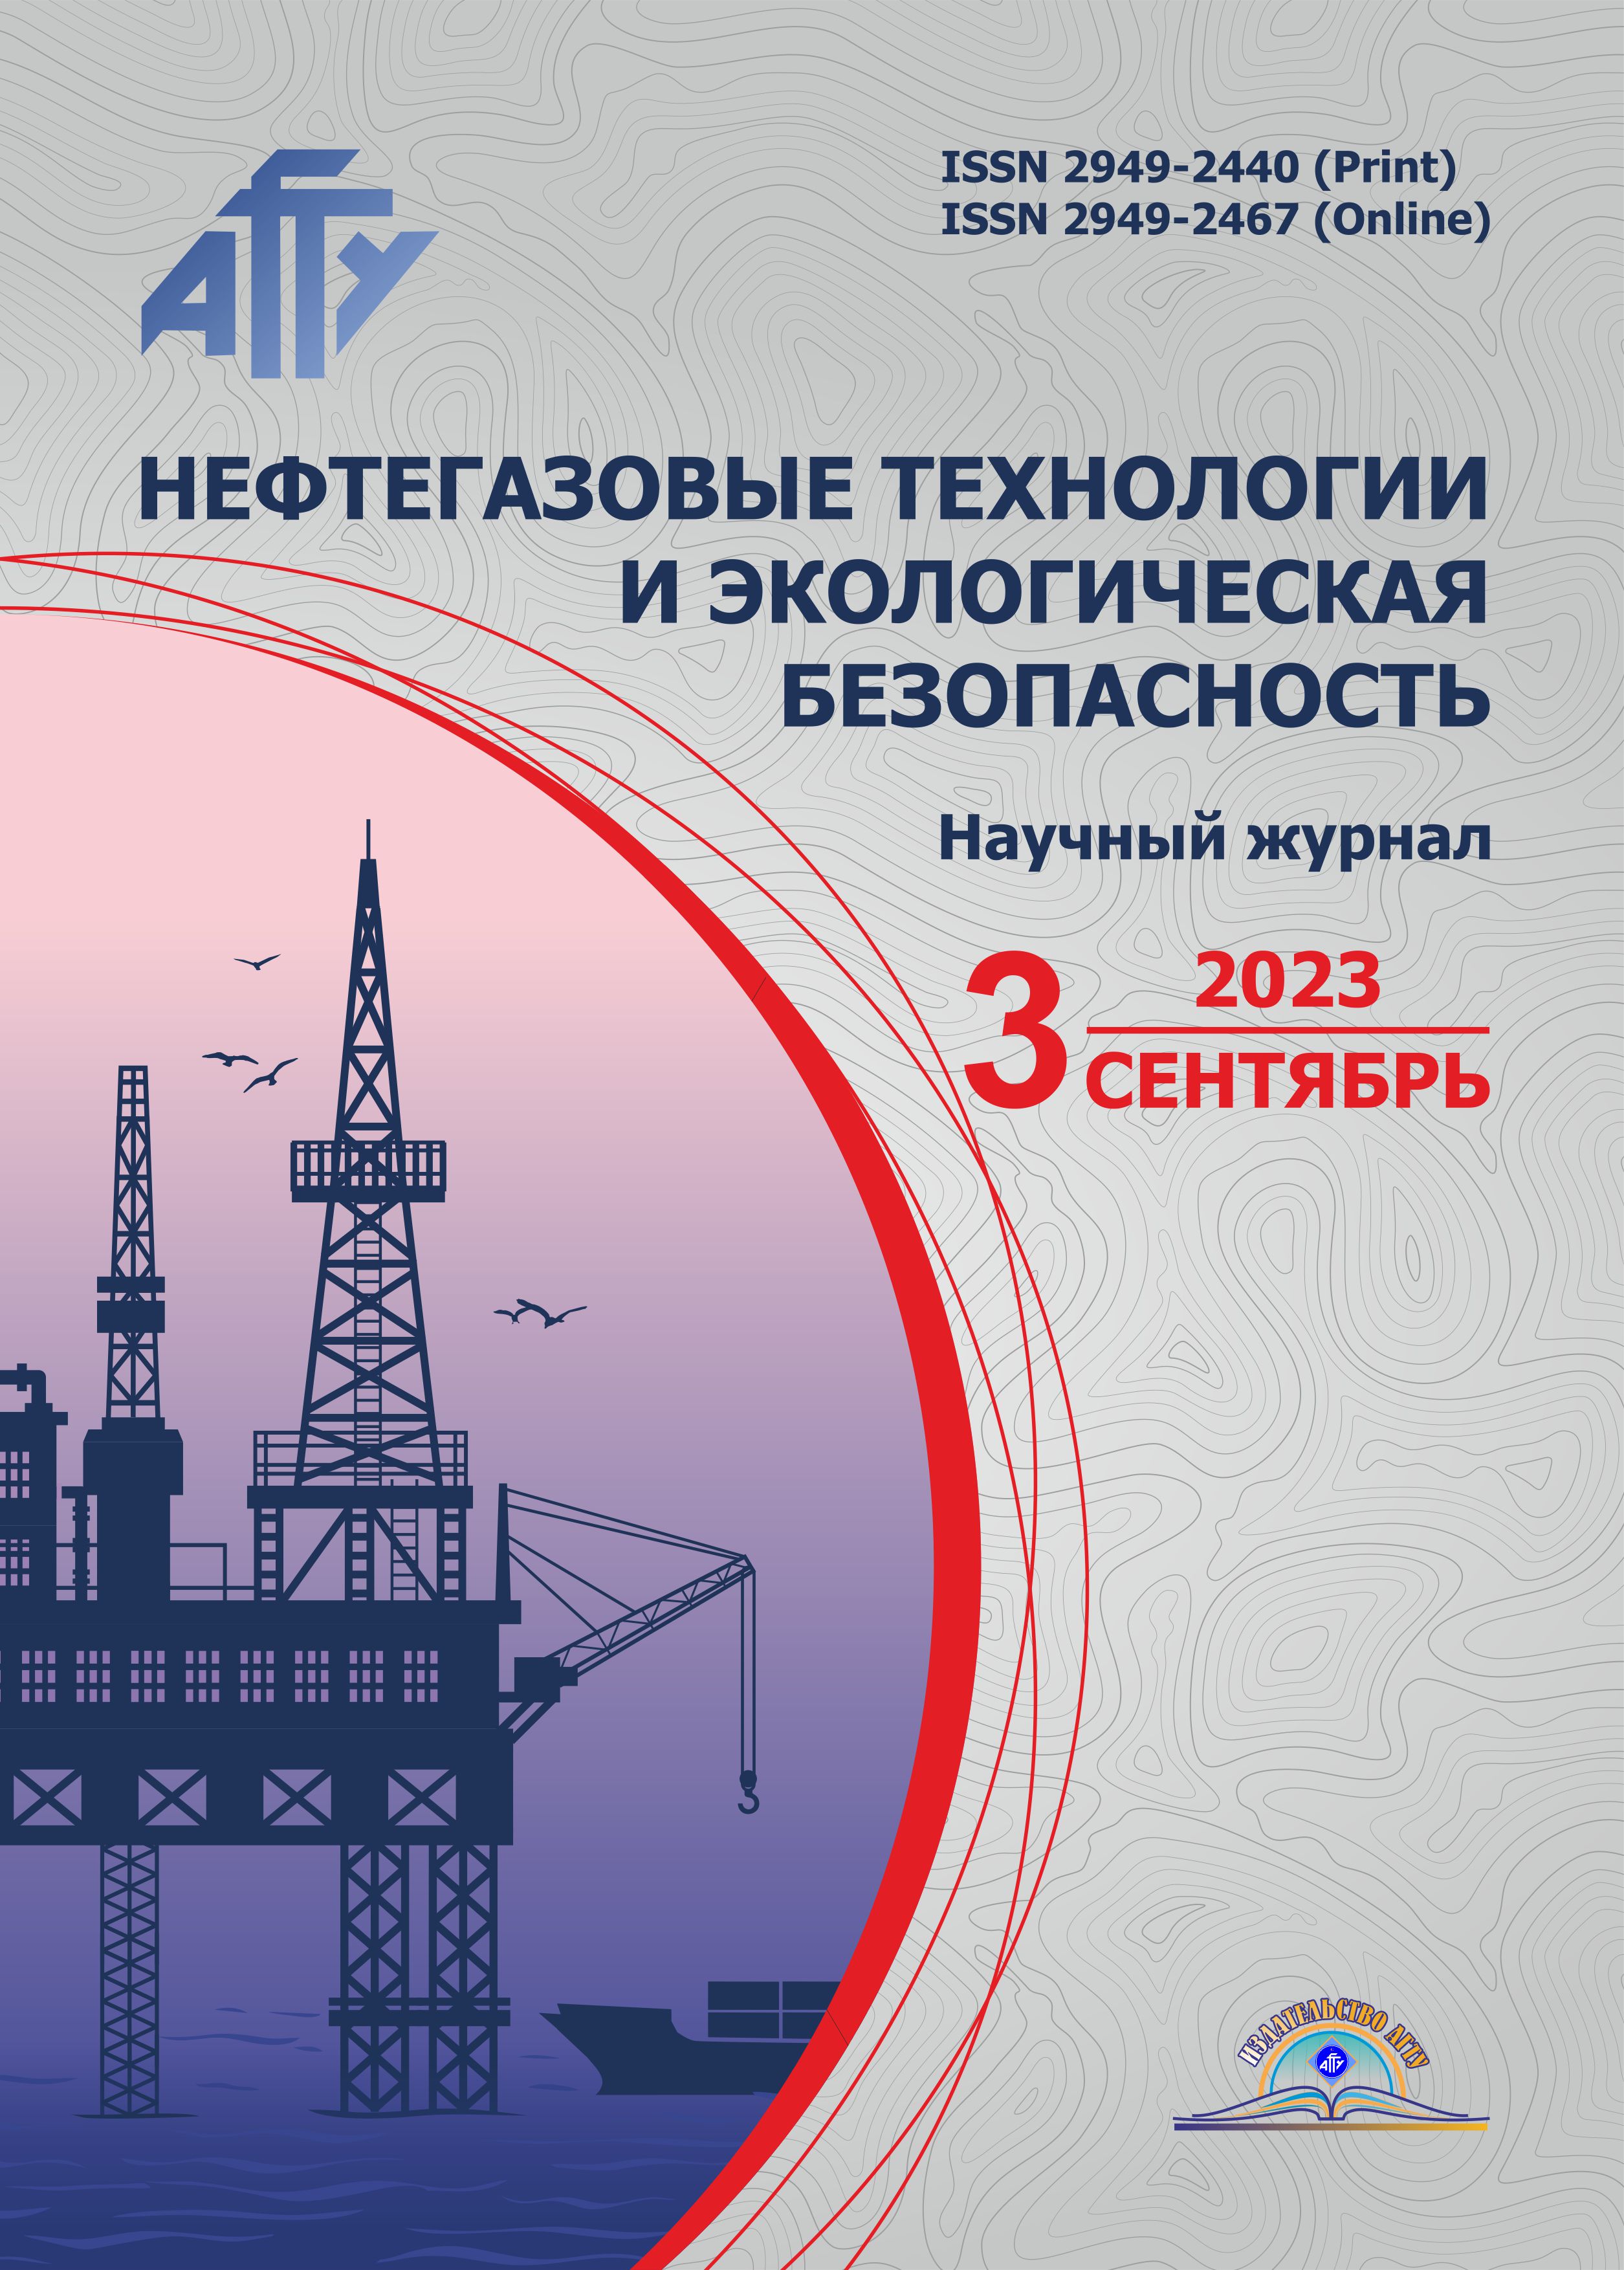             Анализ зависимости проницаемости от открытой пористости  карбонатных пород коллектора  в районах Астраханского газоконденсатного месторождения
    